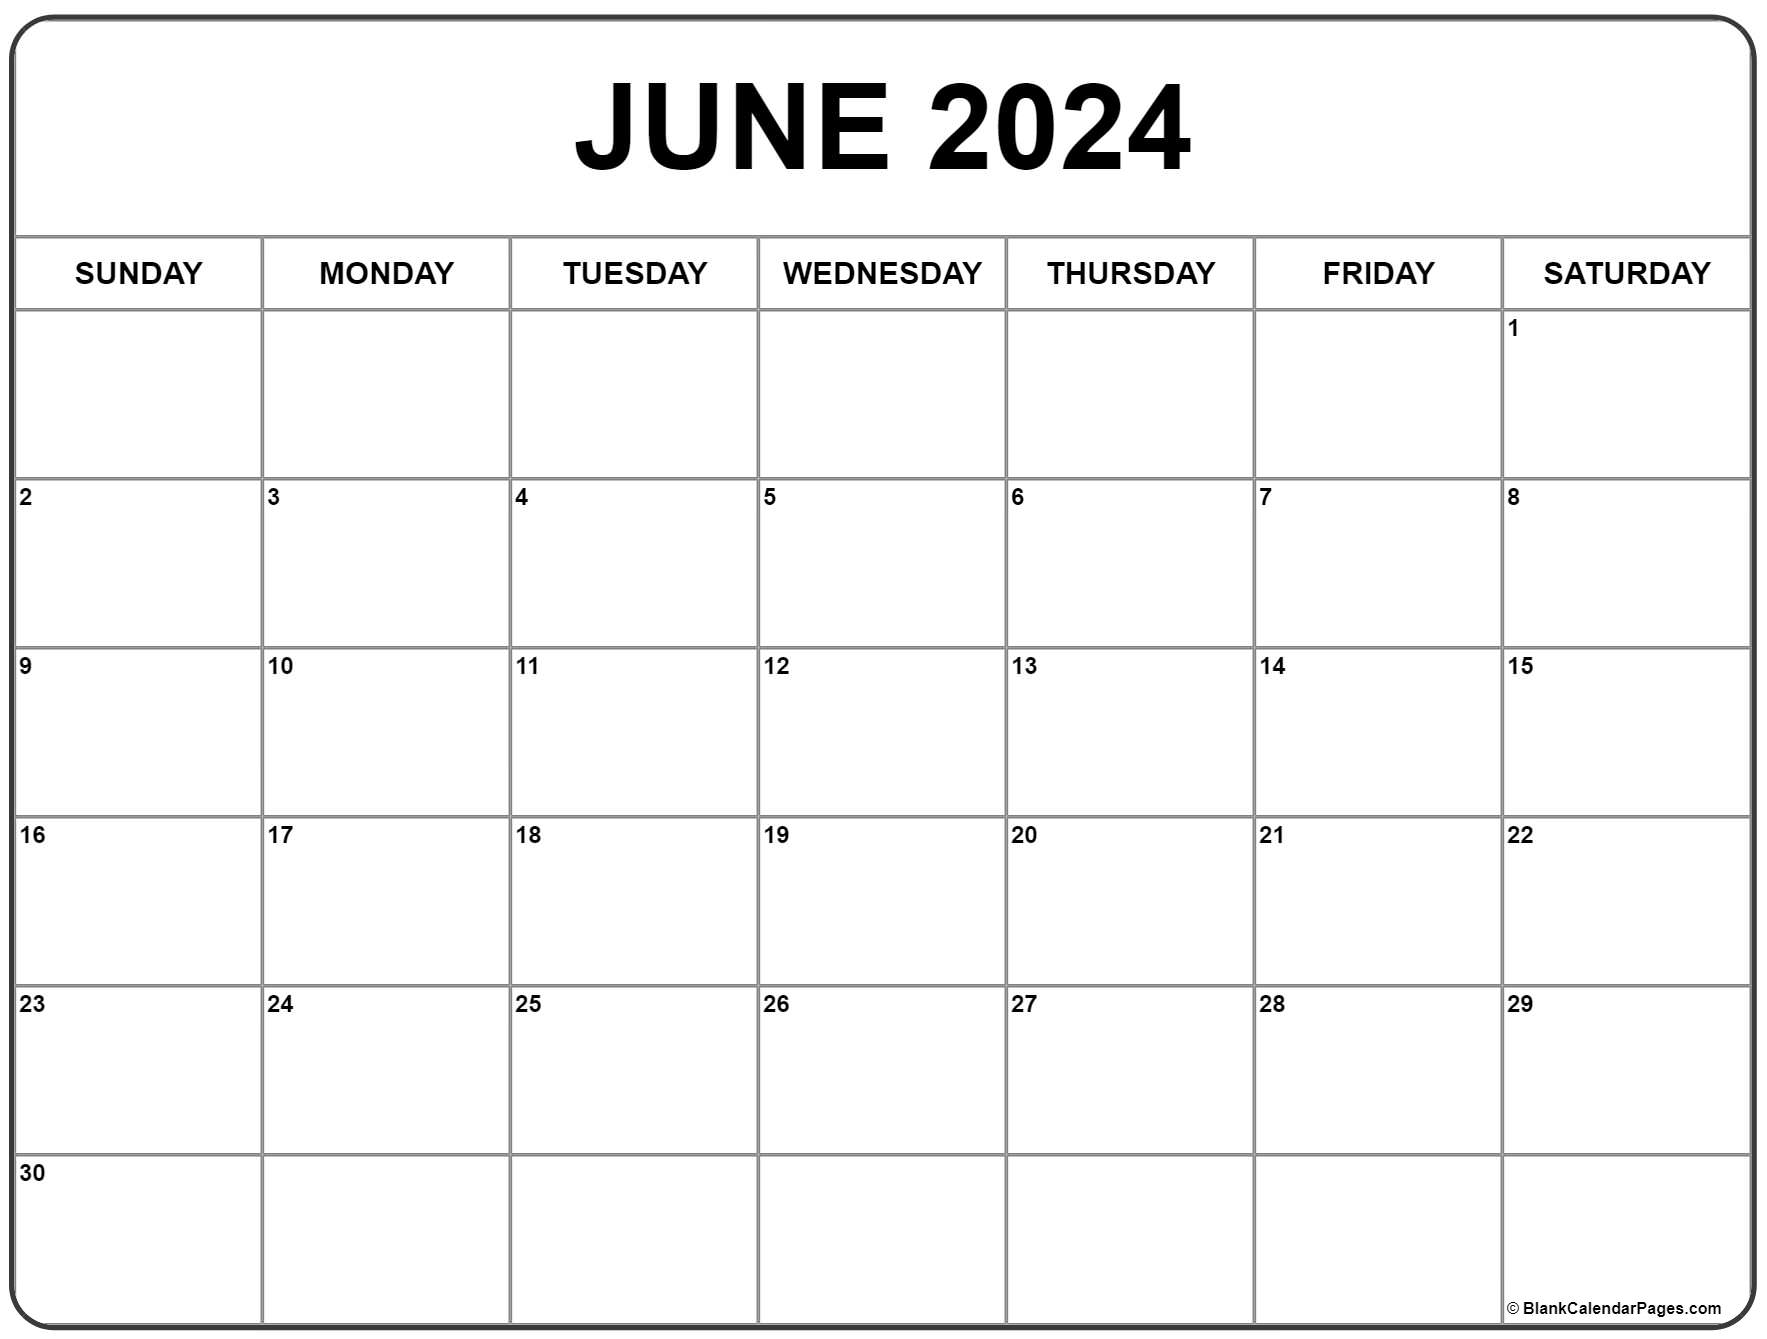 June 2024 Calendar | Free Printable Calendar for 2024 June Calendar Free Printable